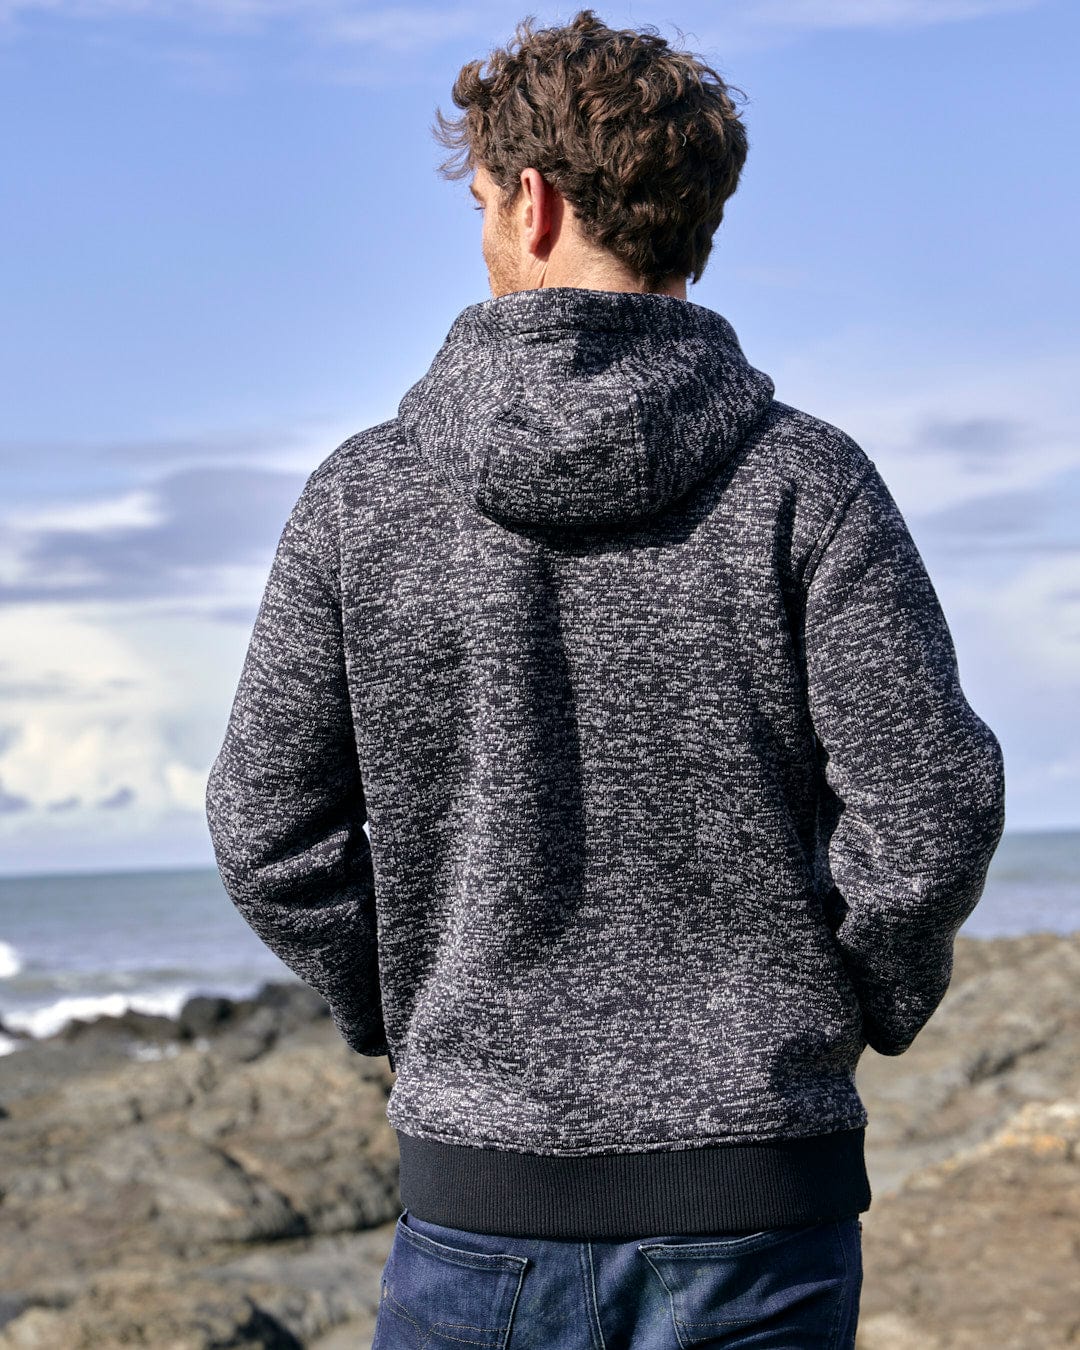 The back of a man wearing a Saltrock Oskar - Mens Bonded Zip Hoodie - Grey admiring the ocean.